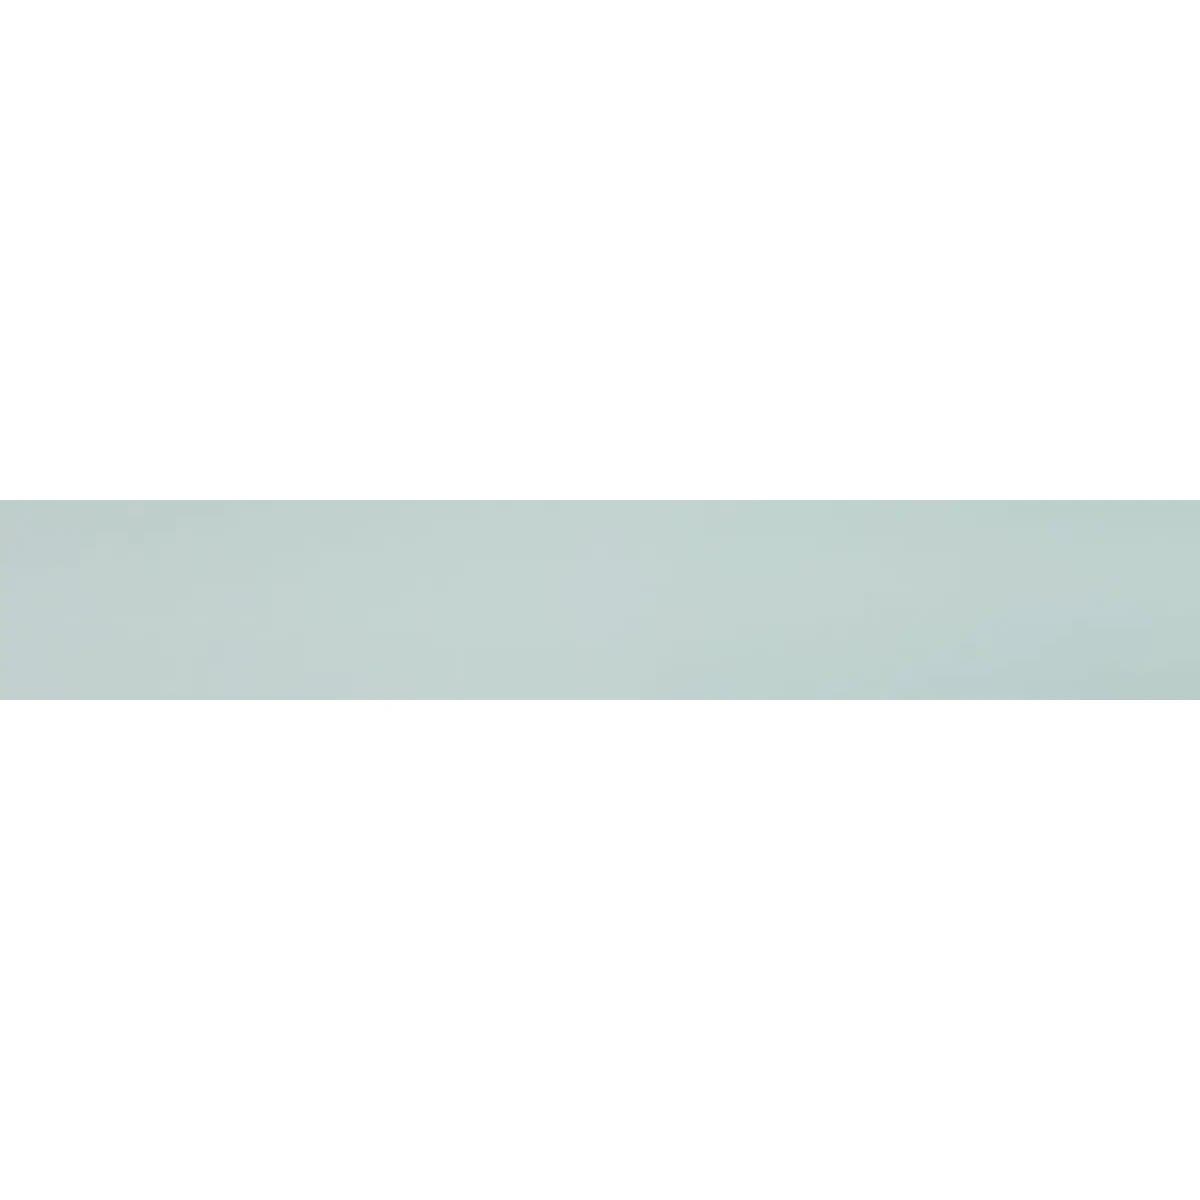 Жалюзи рулонные алюминиевые в кассете на направляющих Roto Designo ZJA M. Цвет: серый светлый (J04).